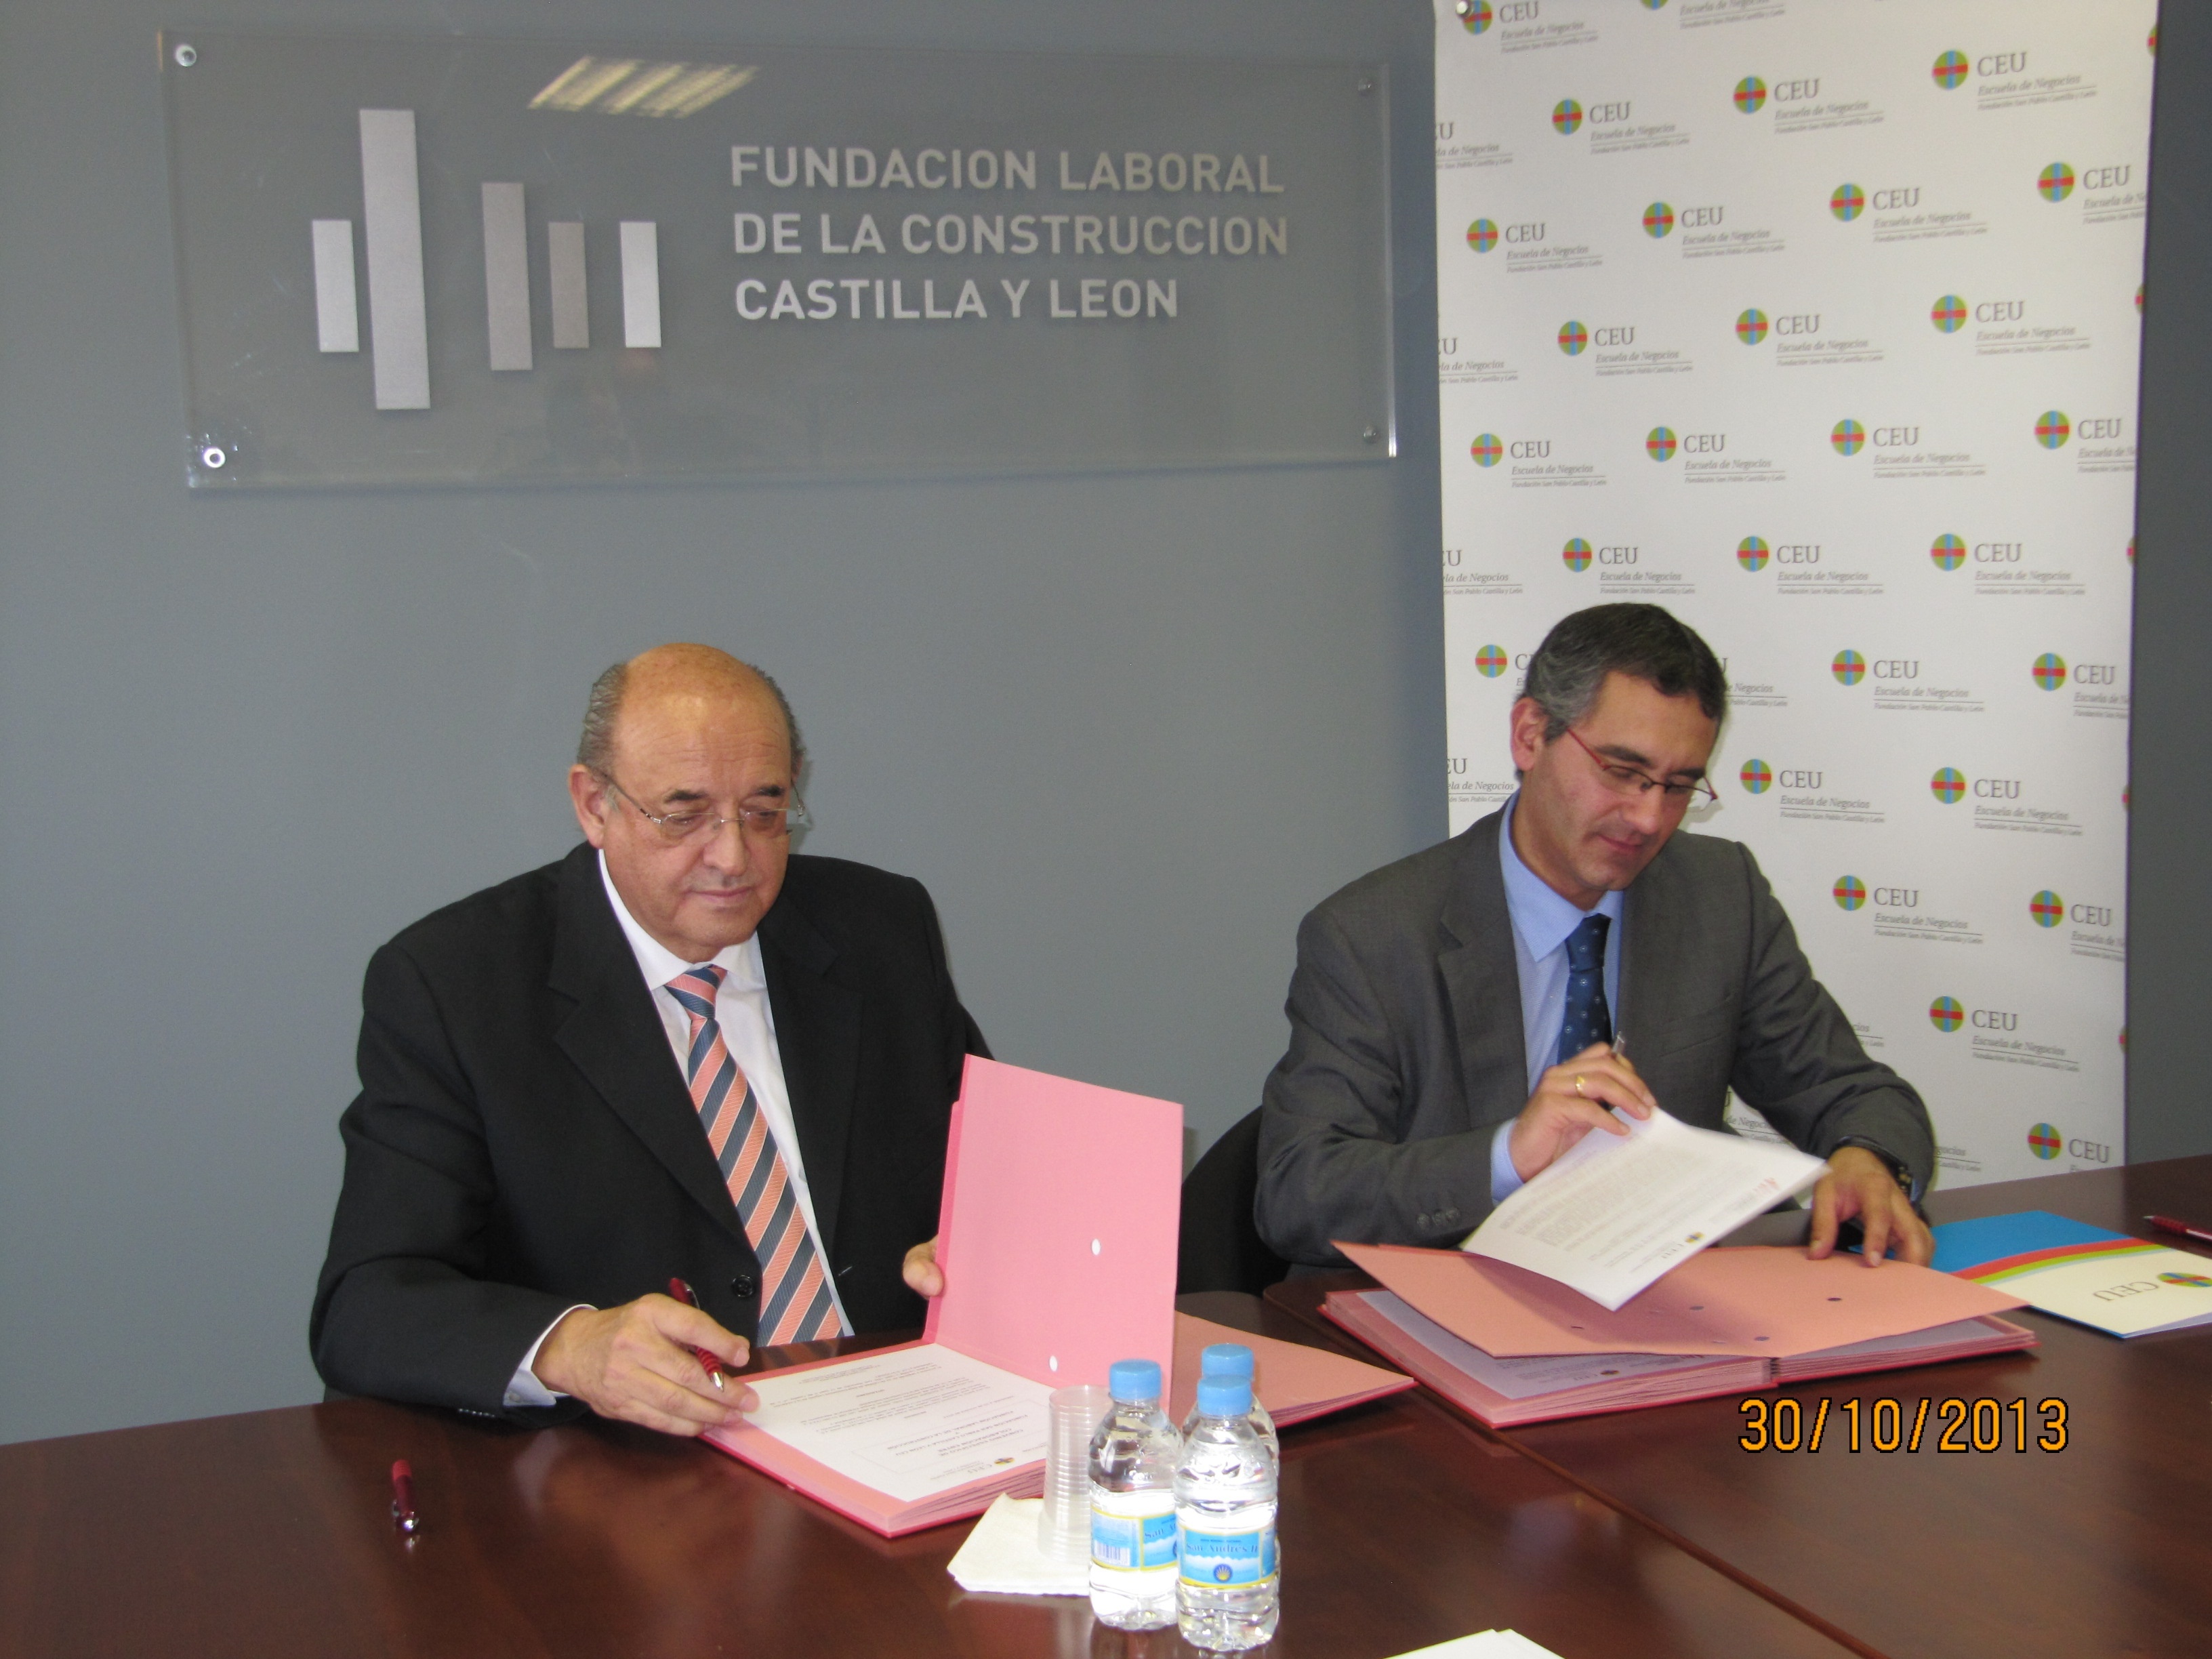 San Pablo CEU y Fundación Laboral de la Construcción firman un convenio de cooperación para Castilla y León